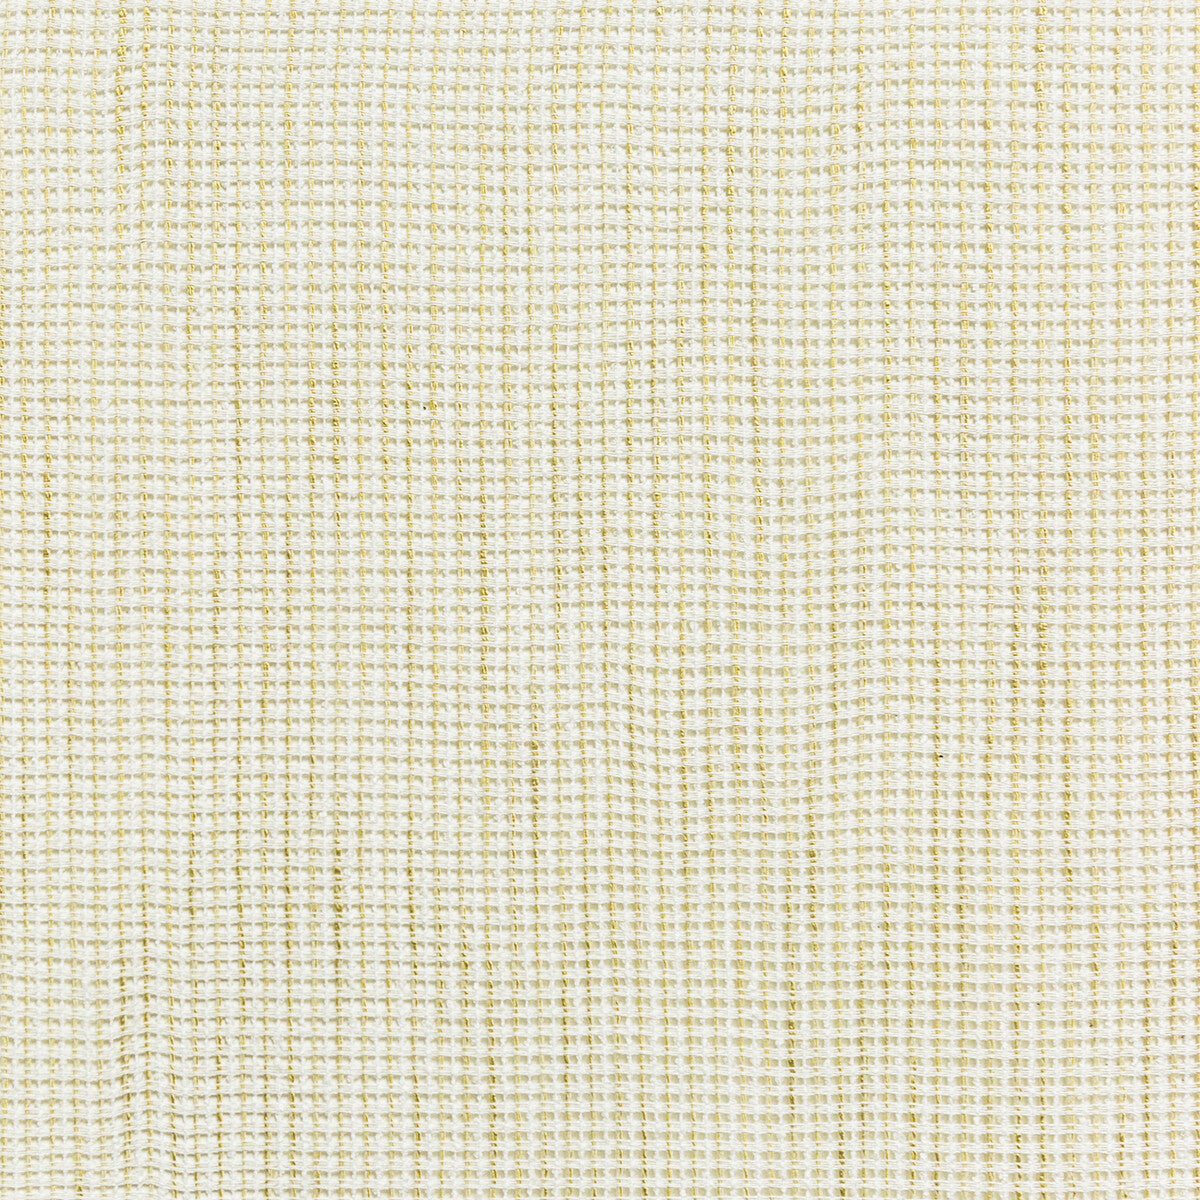 Kravet Basics fabric in 4717-1 color - pattern 4717.1.0 - by Kravet Basics